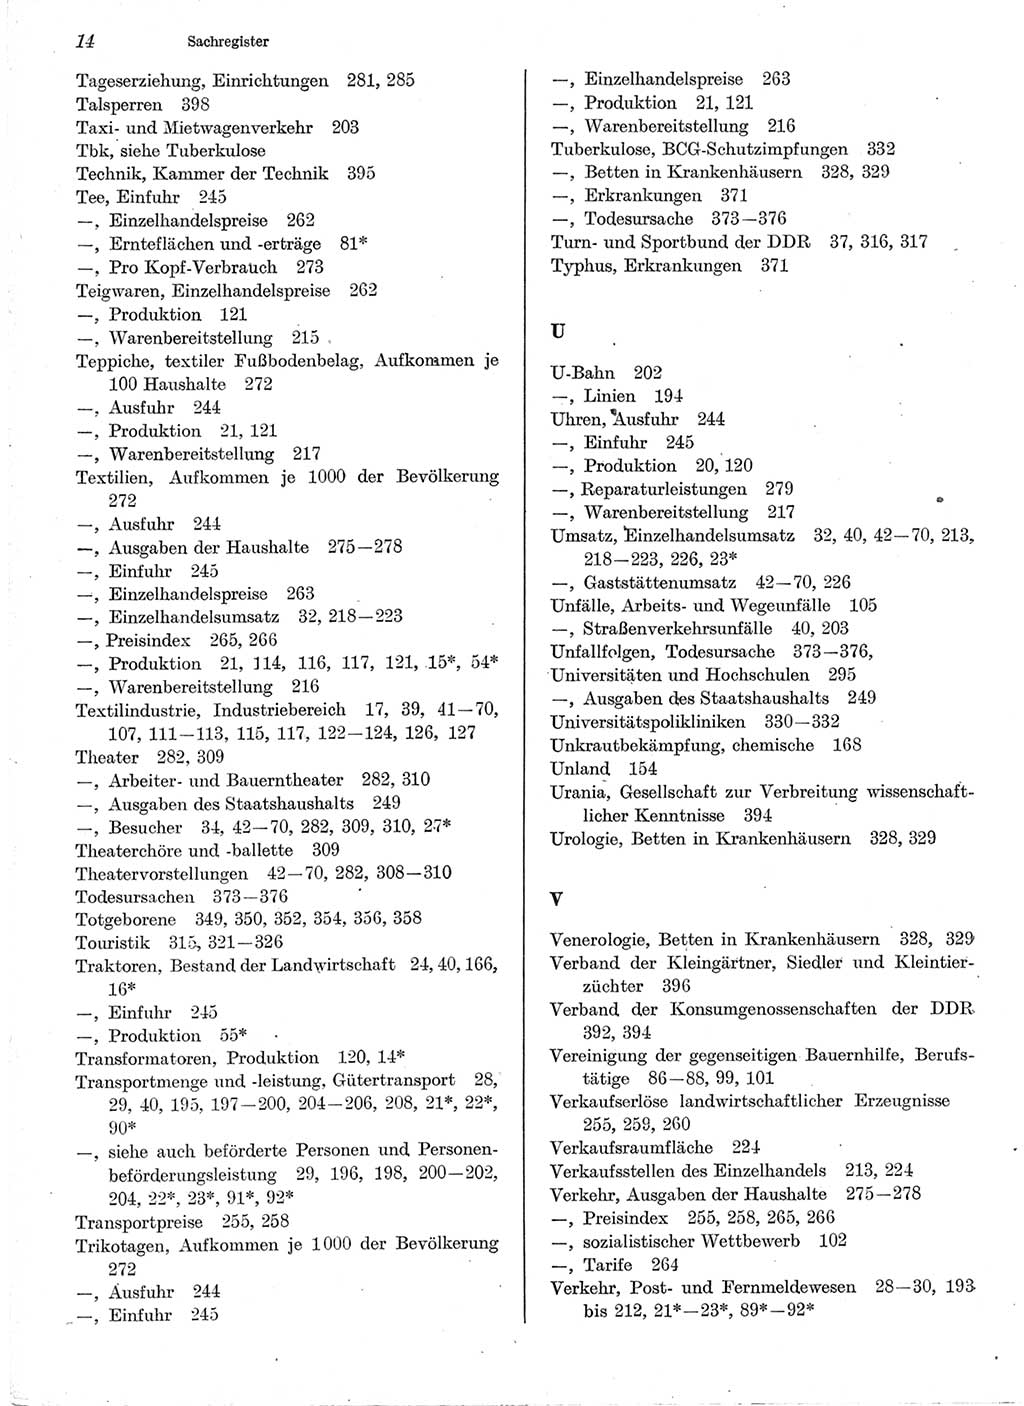 Statistisches Jahrbuch der Deutschen Demokratischen Republik (DDR) 1978, Seite 14 (Stat. Jb. DDR 1978, S. 14)